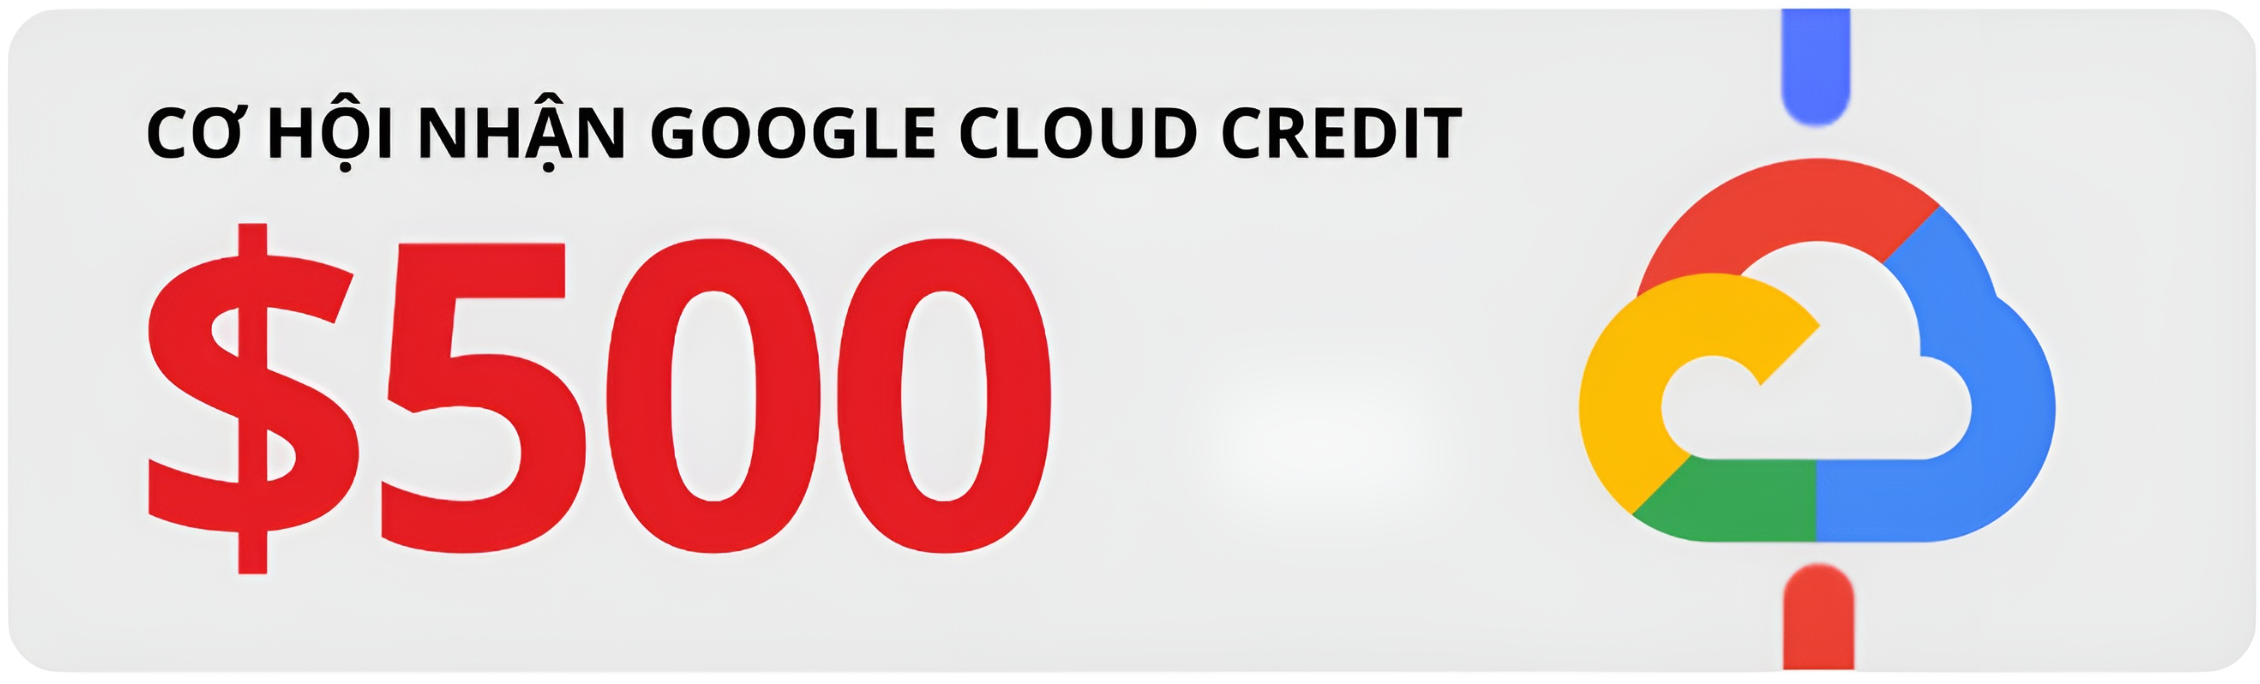 Google Cloud Platform Điện toán đám mây Chuyển đổi số doanh nghiệp Credit GCP Hỗ trợ kỹ thuật miễn phí CloudAZ 5 năm CloudAZ Đối tác Google Cloud Hạ tầng công nghệ Ưu đãi Google Workspace Đánh giá Google Cloud Tri ân khách hàng Giải pháp chuyển đổi số Kỹ thuật chuyên nghiệp Dịch vụ điện toán đám mây.